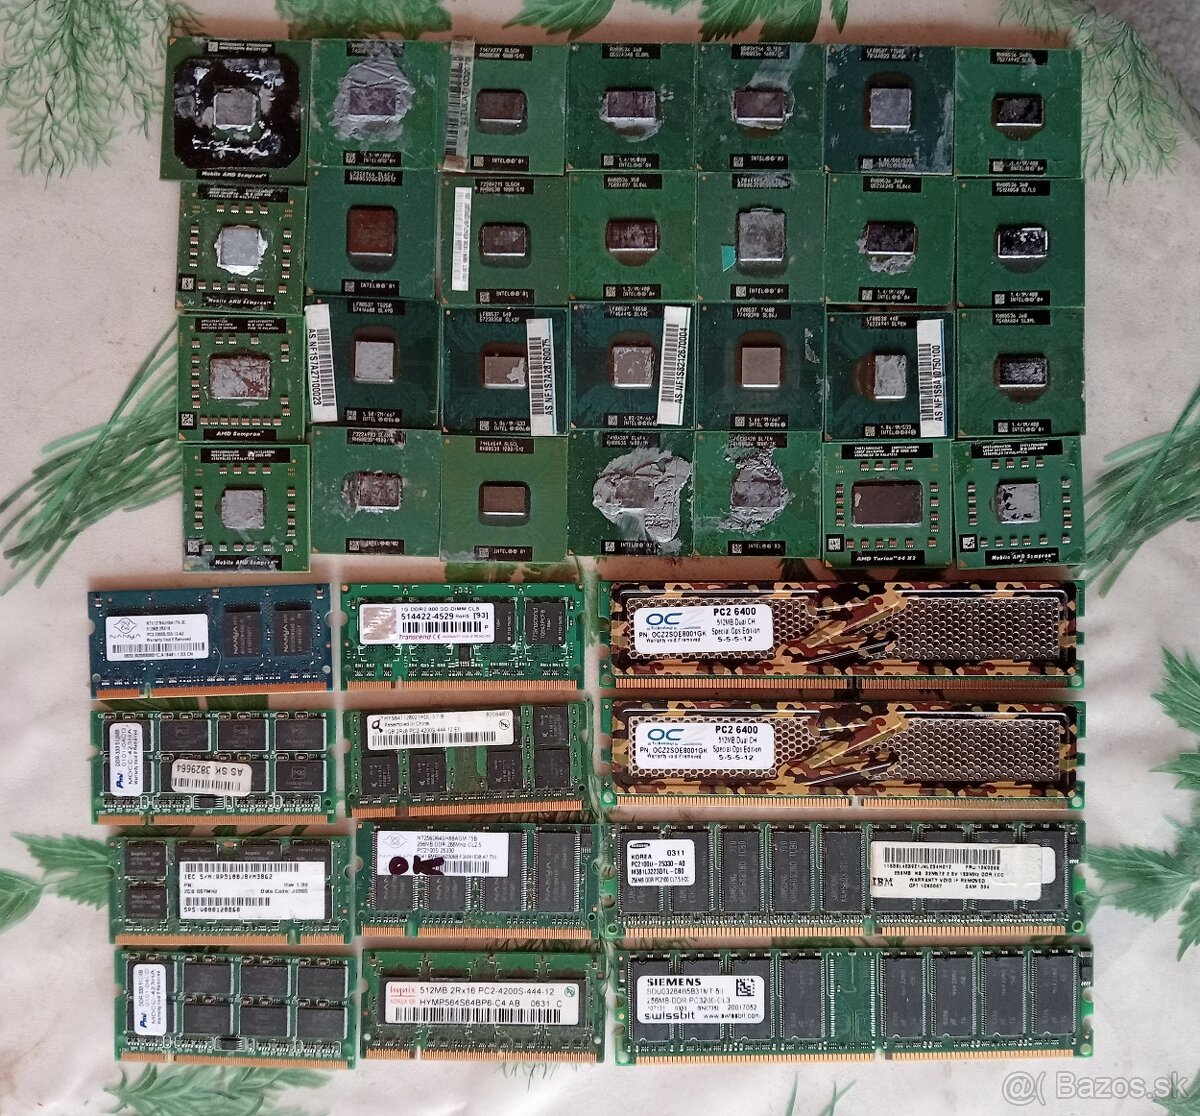 Pamäťe+procesory-stare notebooky